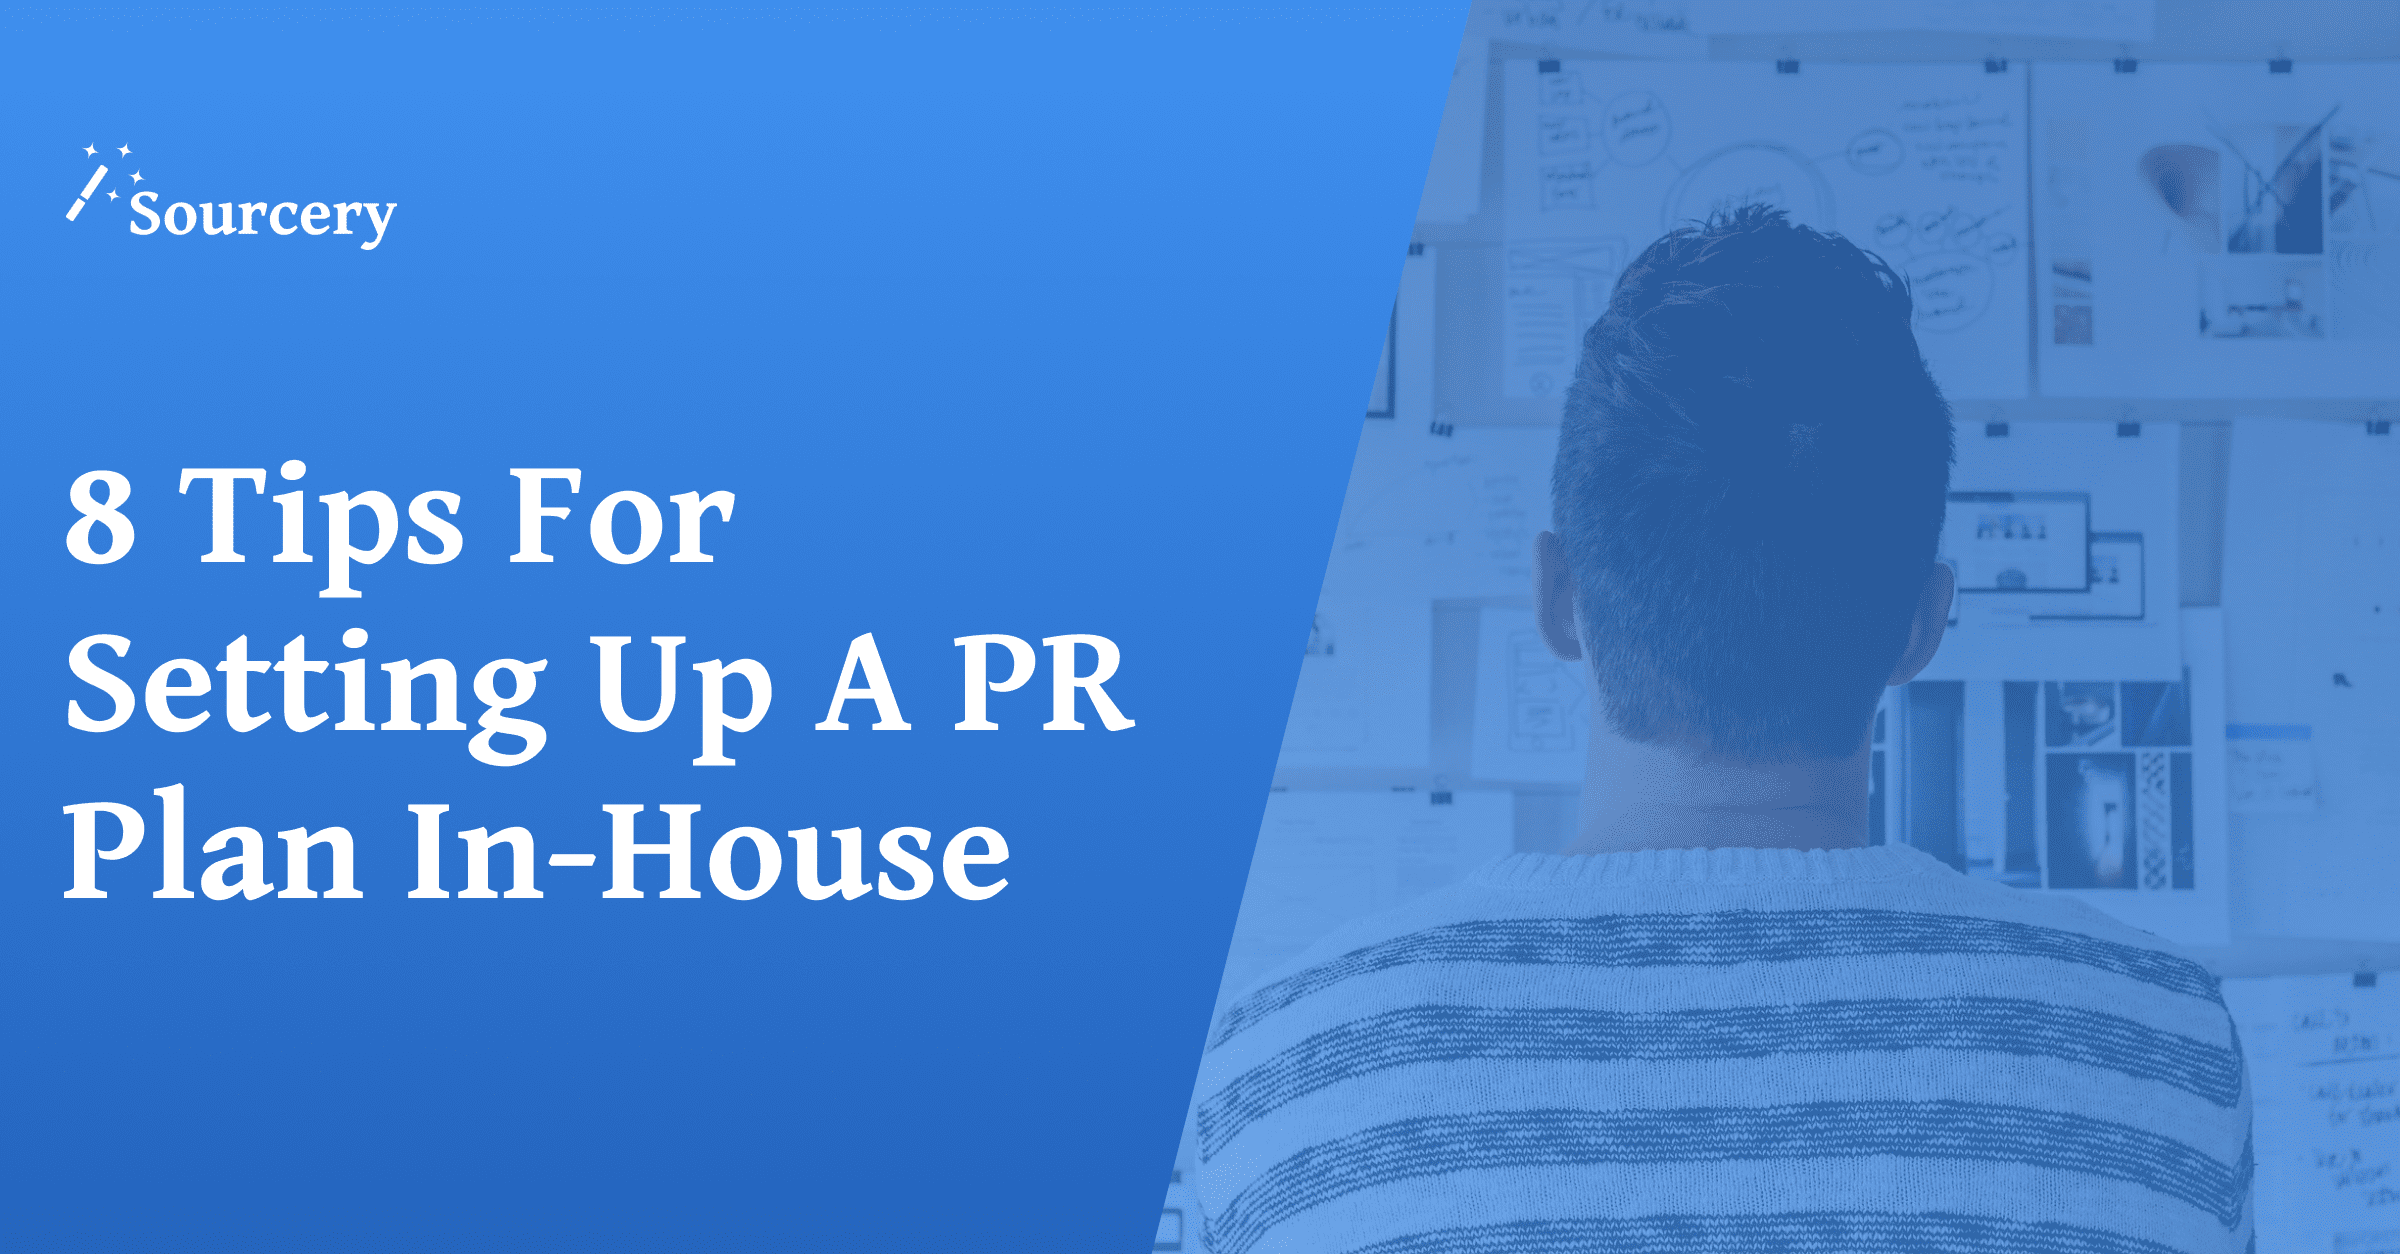 Build a PR Plan